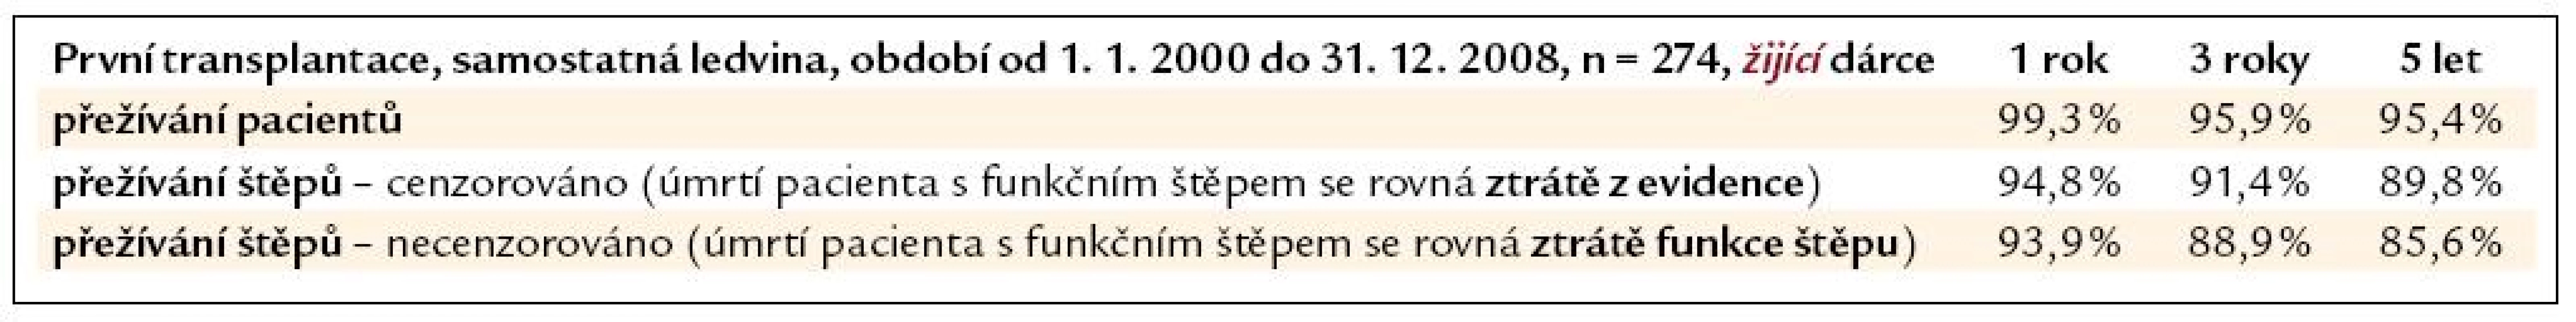 Přežívání pacientů a štěpů ledvin od žijícího dárce, transplantovaných v ČR v letech 2000–2008 (1. transplantace).